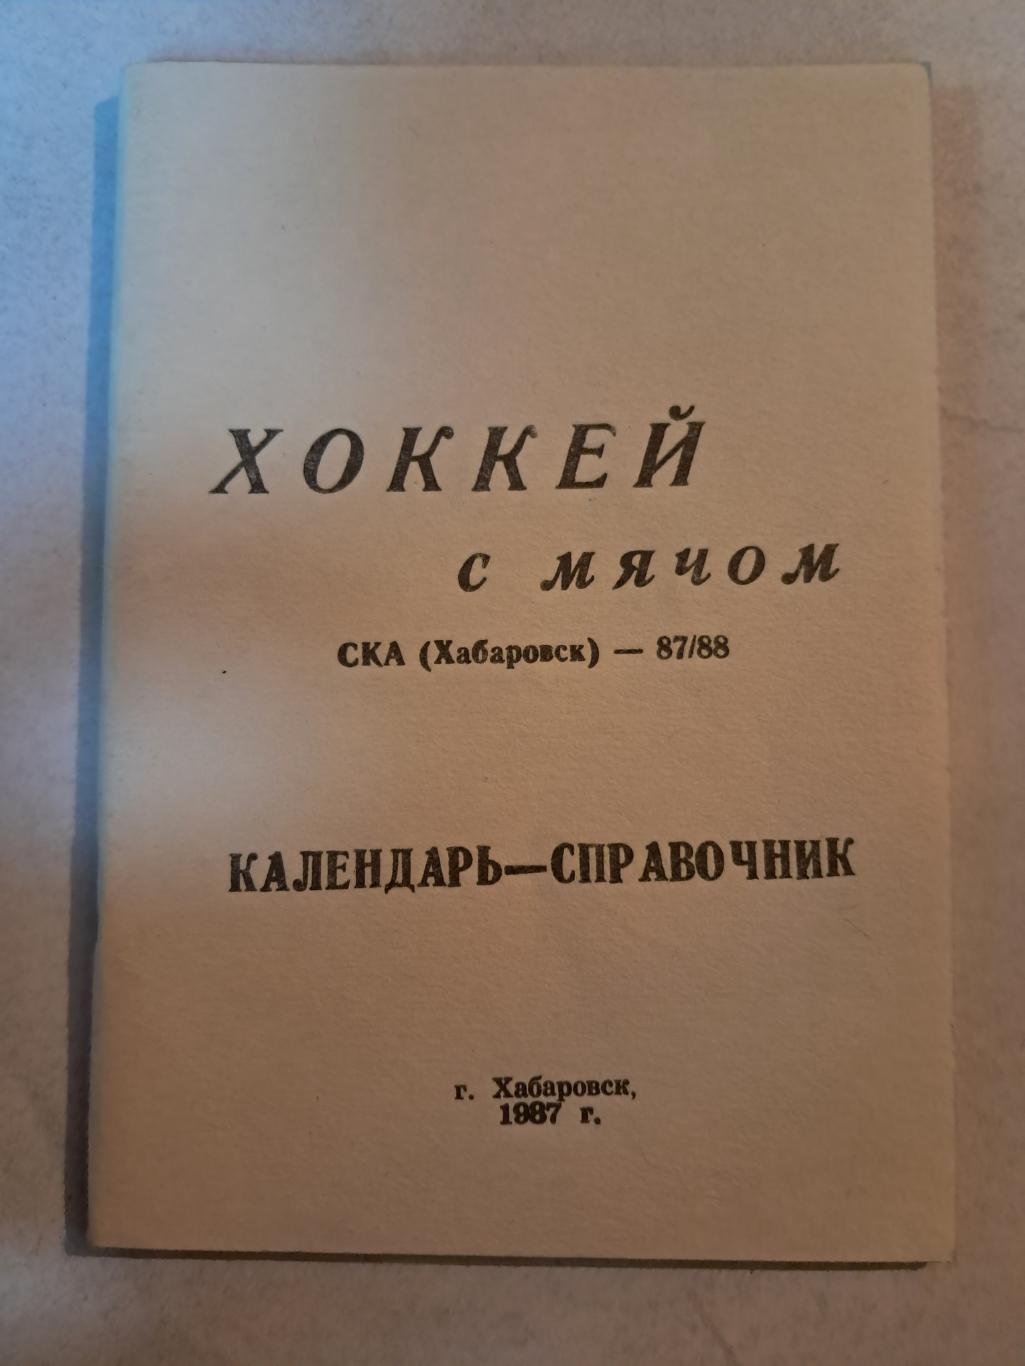 Календарь-справочник по хоккею с мячом 1987/88 СКА Хабаровск